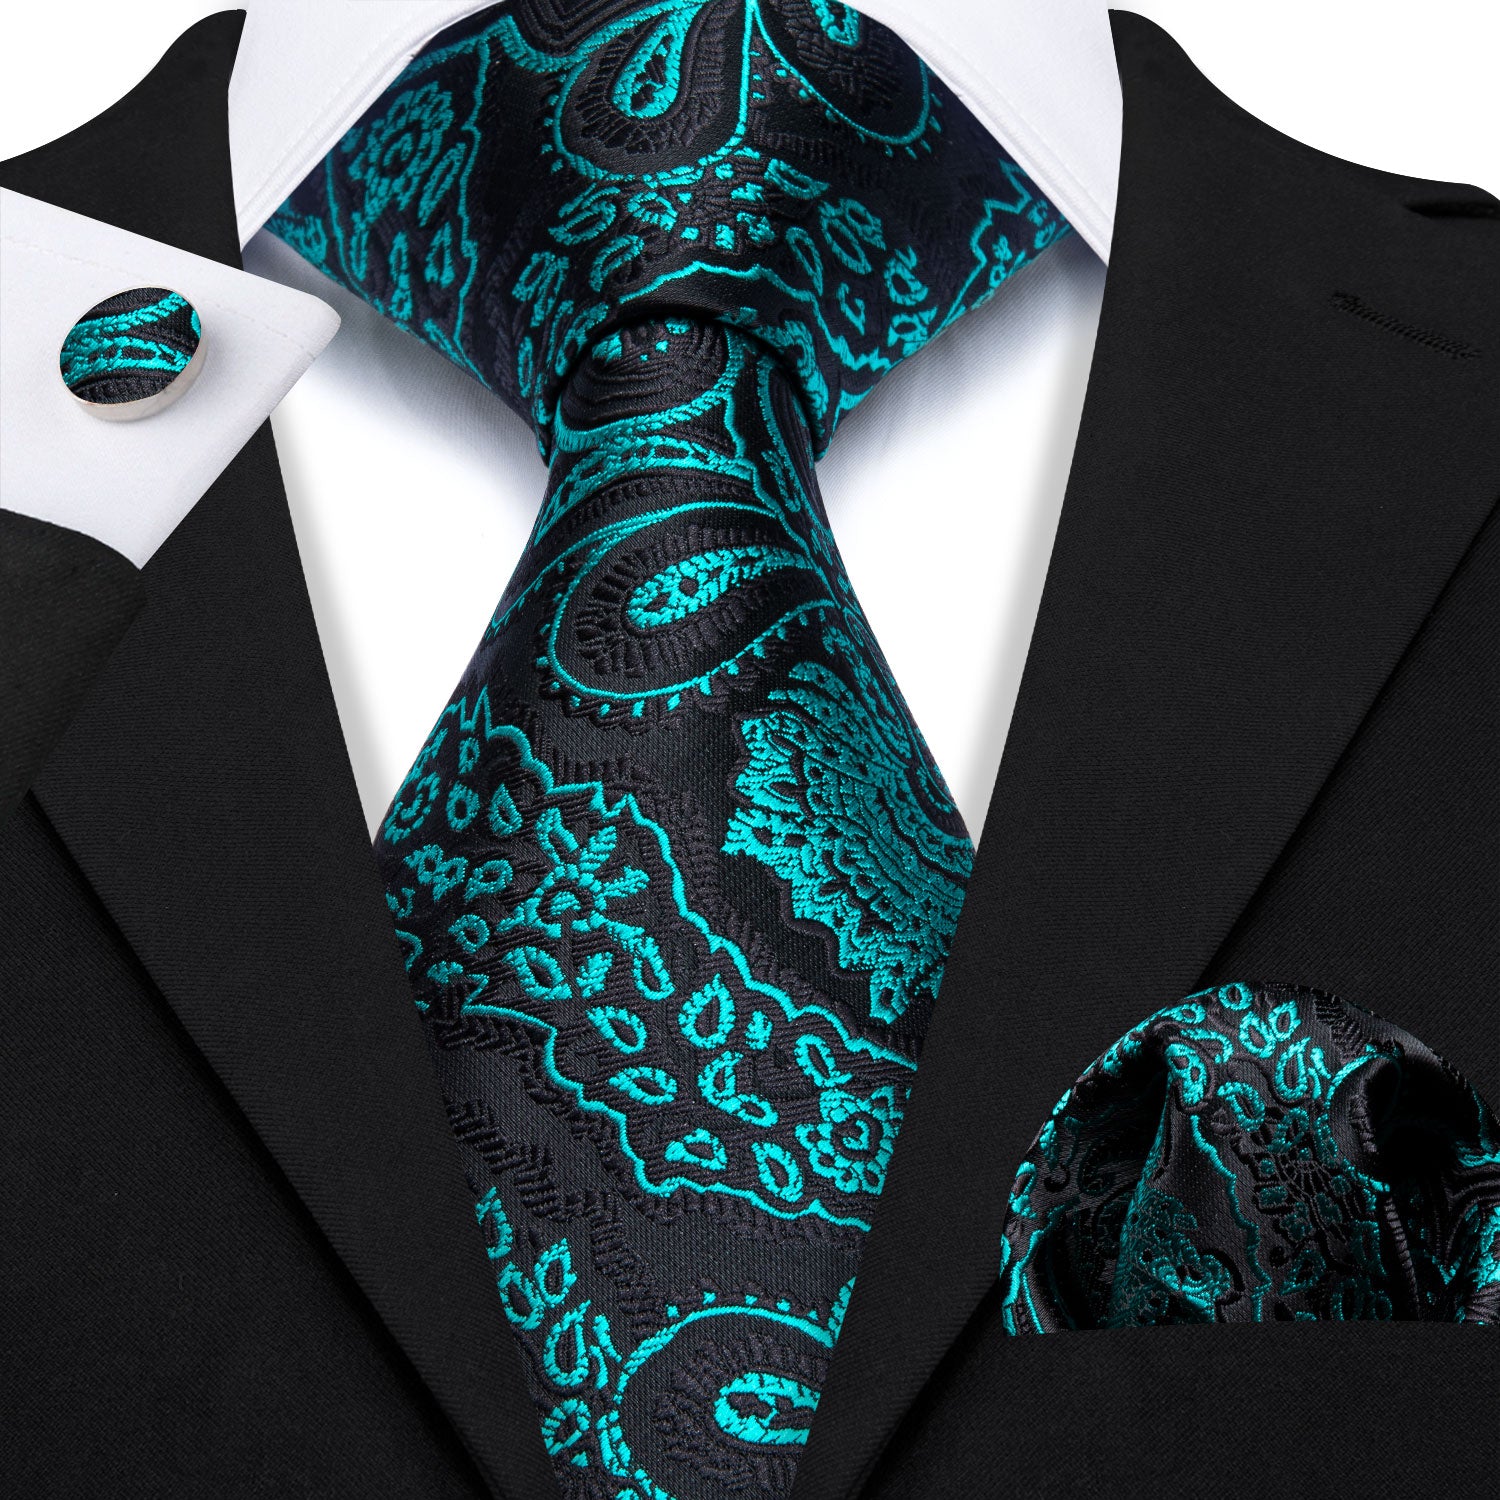 silk navy tie Teal paisley necktie black necktie for men's black suit 